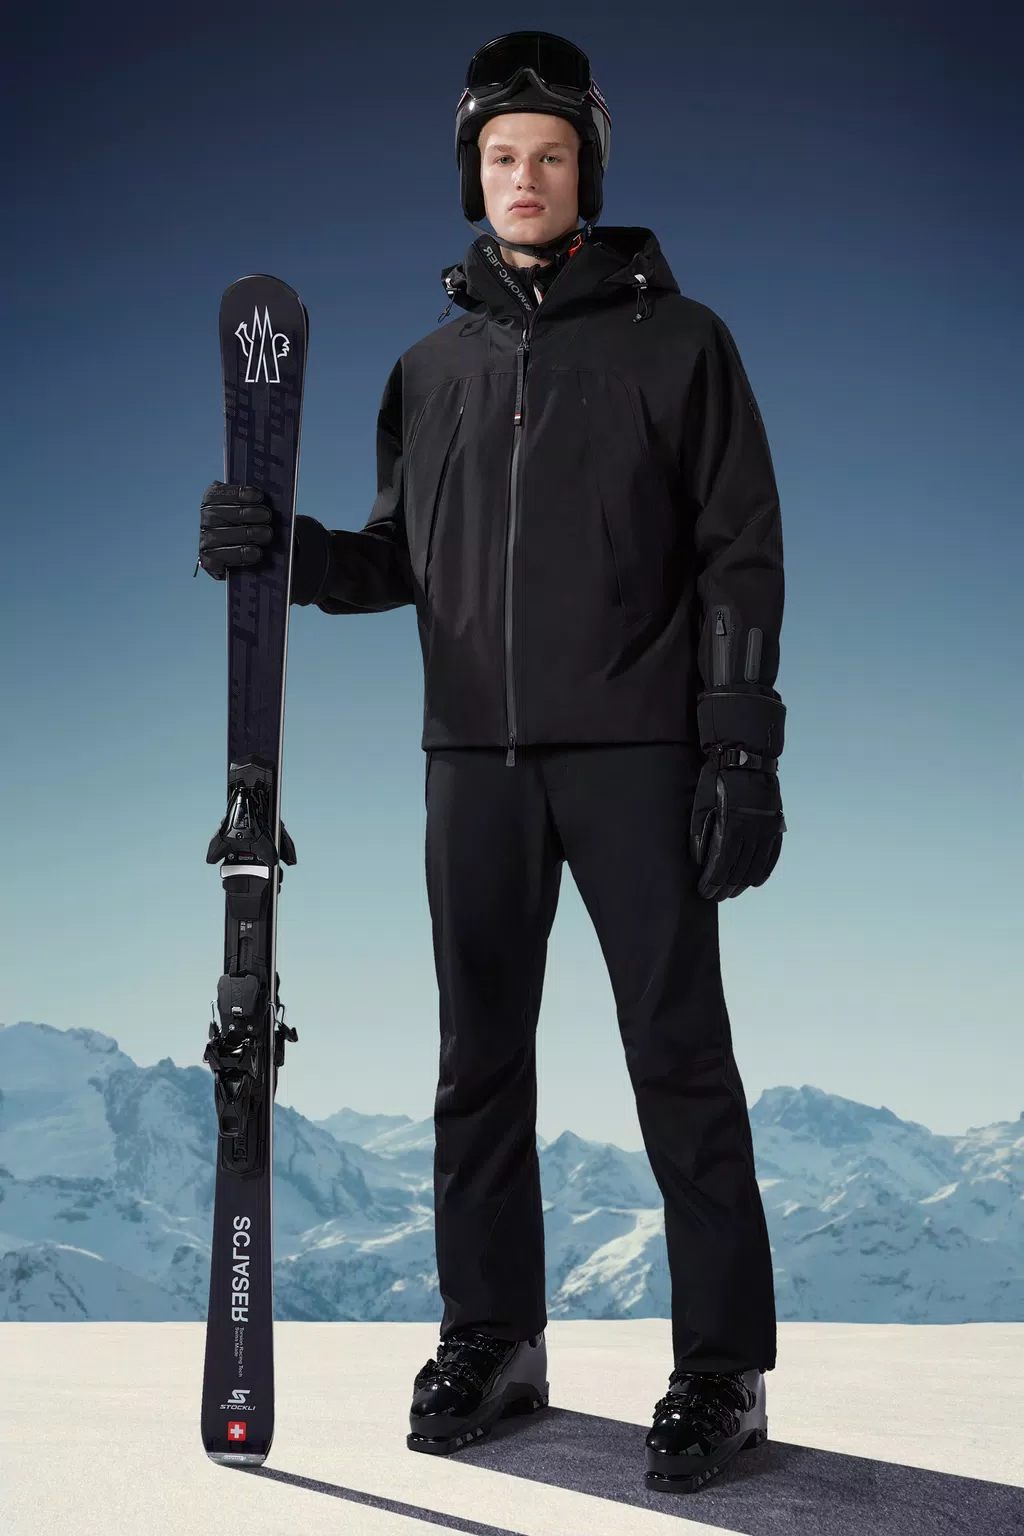 Black Ski Suit -  Canada